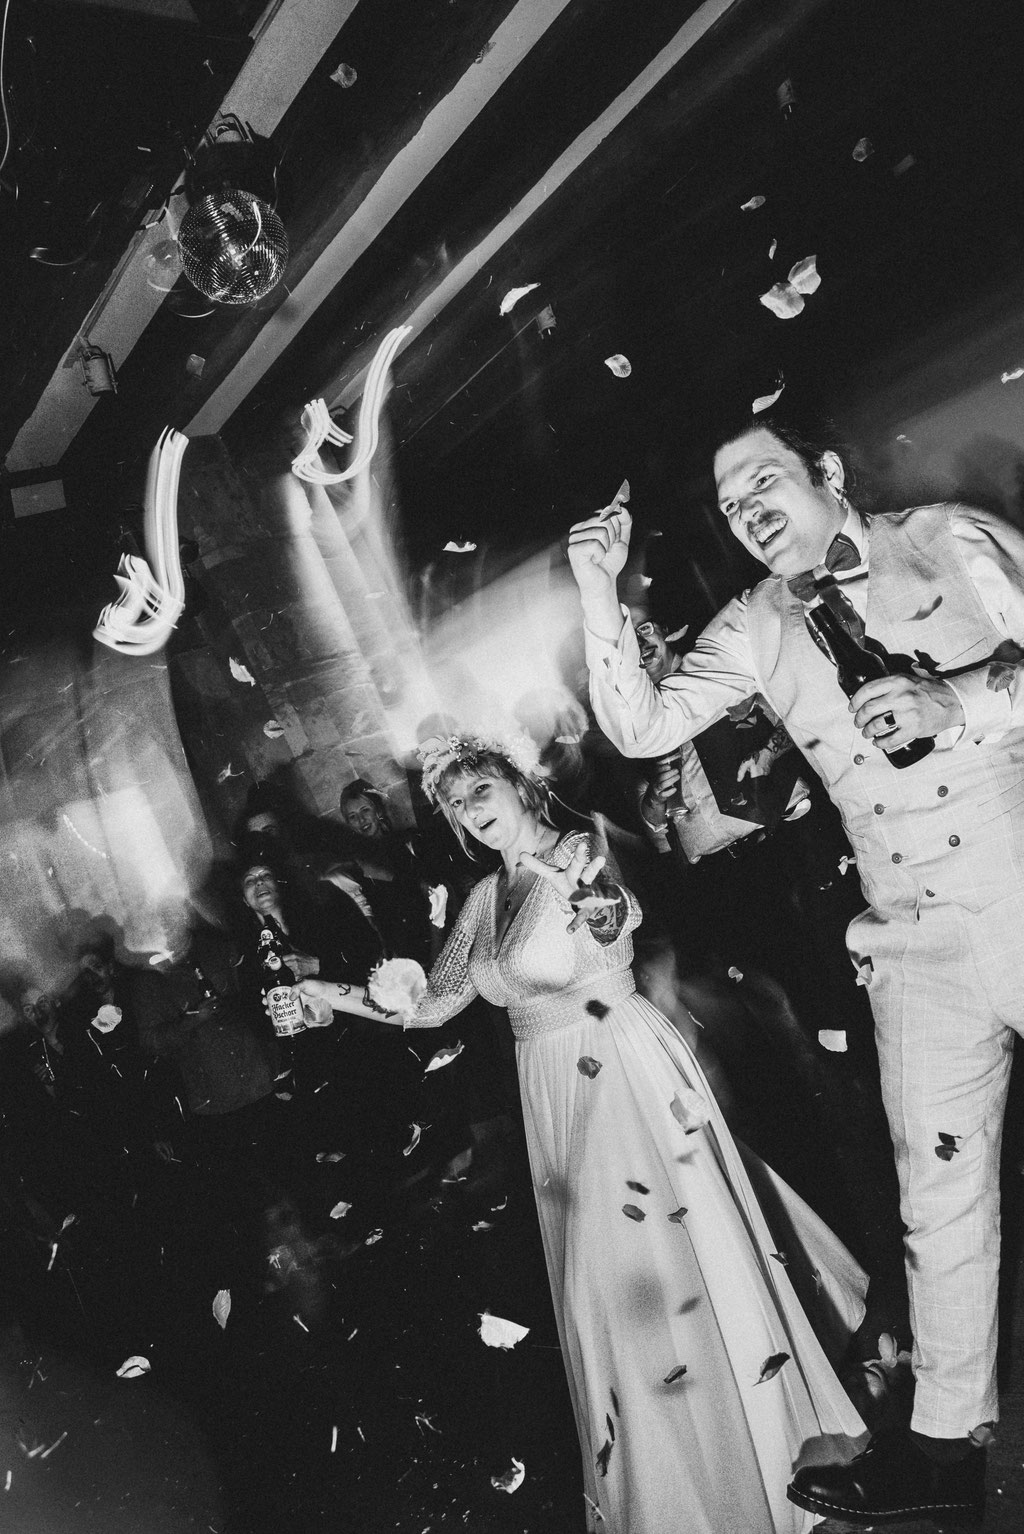 Schwarz Weiss Foto von Braut mit Bräutigam beim Tanzen. Professionelles Hochzeitsfoto mit Blitz.